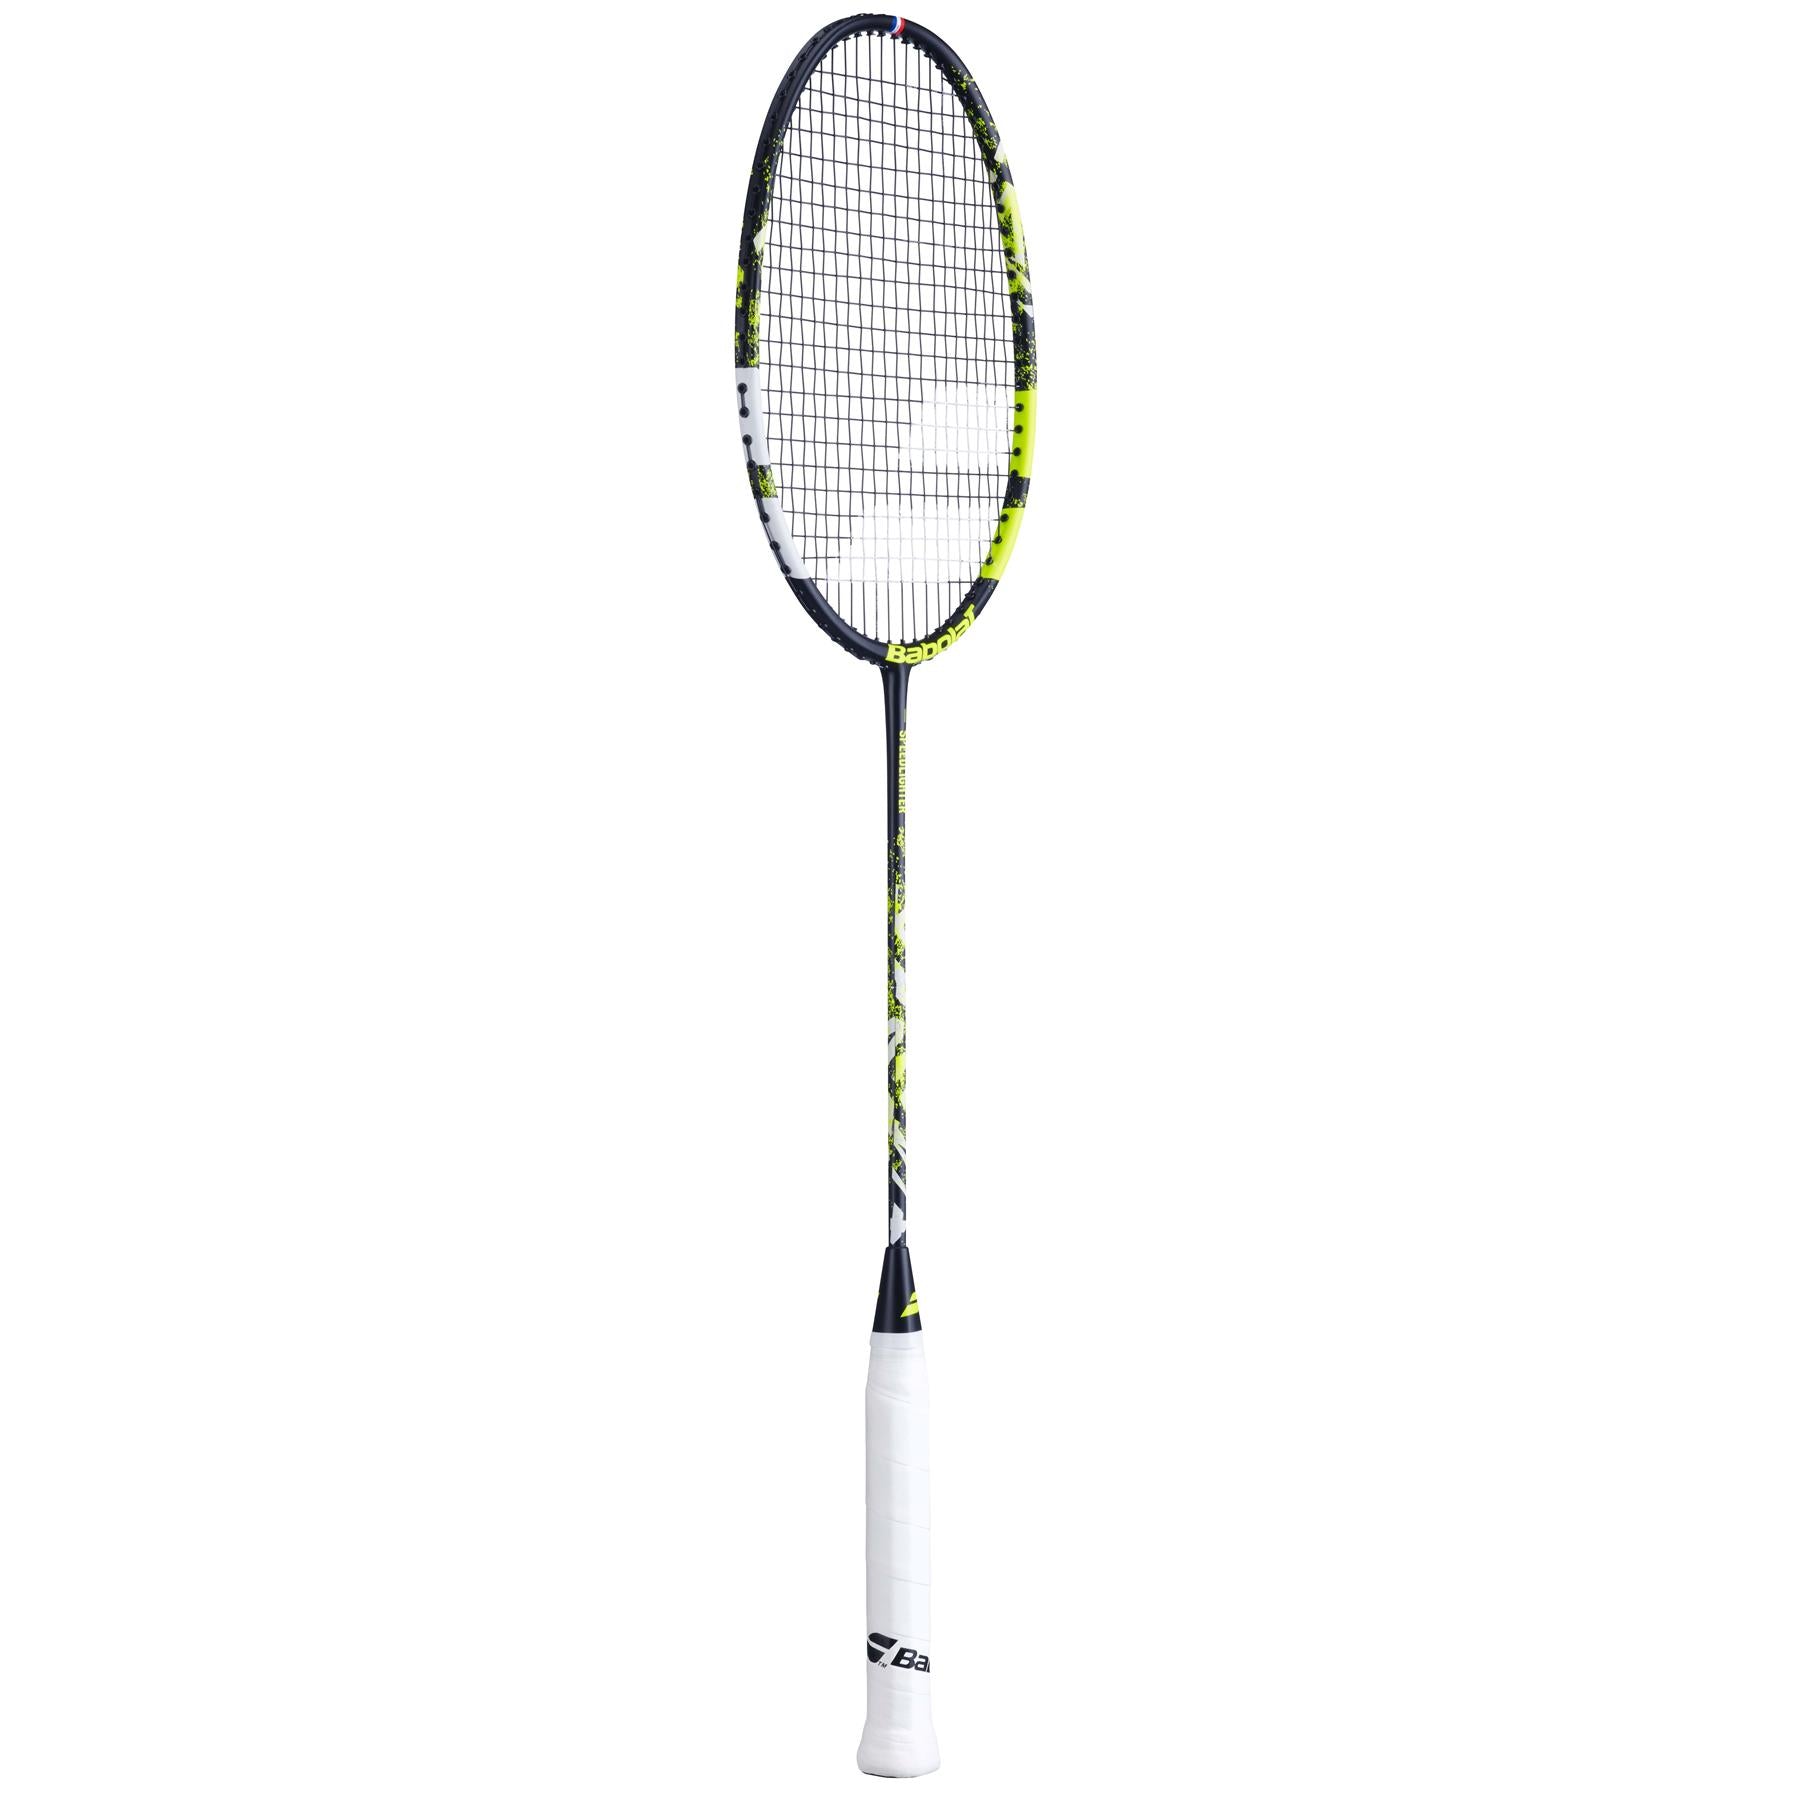 Babolat Speedlighter Junior Badminton Racket - Black / Green - Right